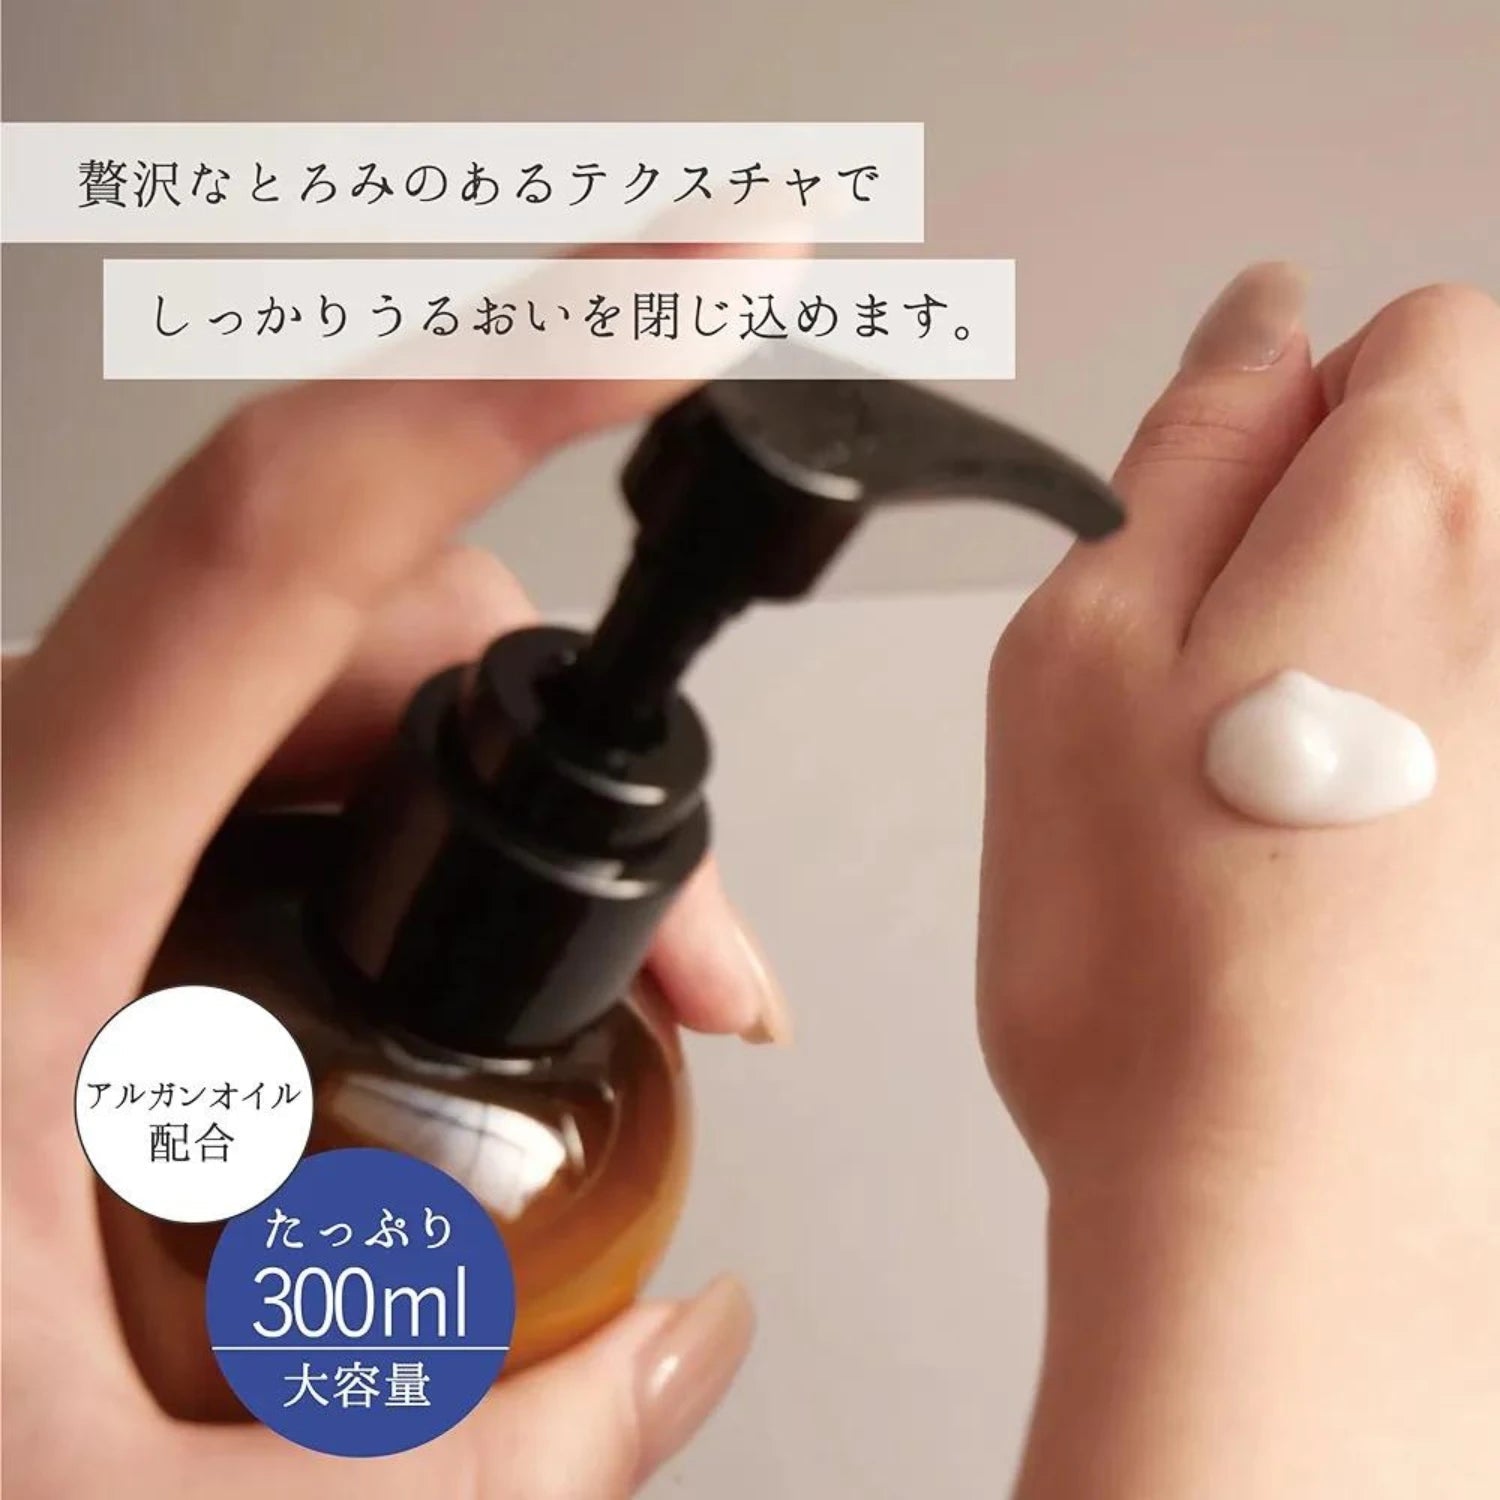 EPIS Organic Moisture Serum 300ml - Buy Me Japan